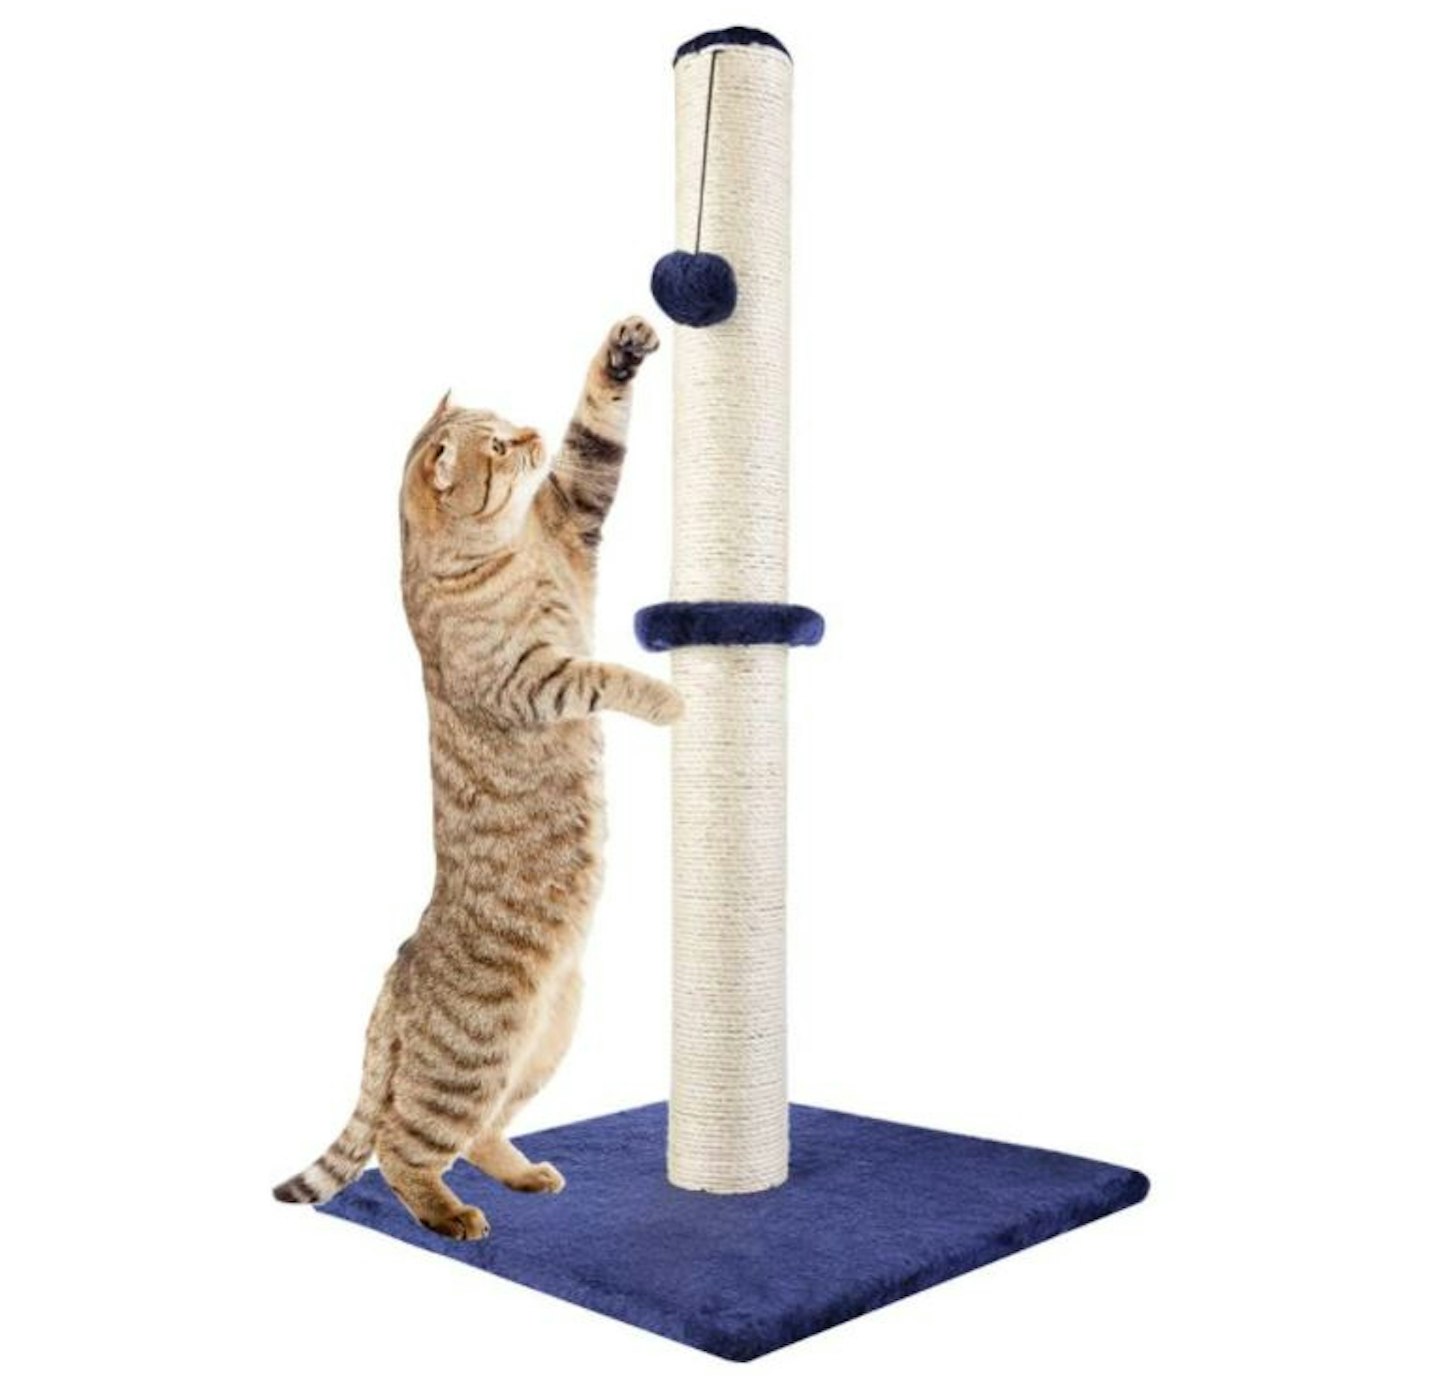 Dimaka 29" Tall Cat Scratching Post